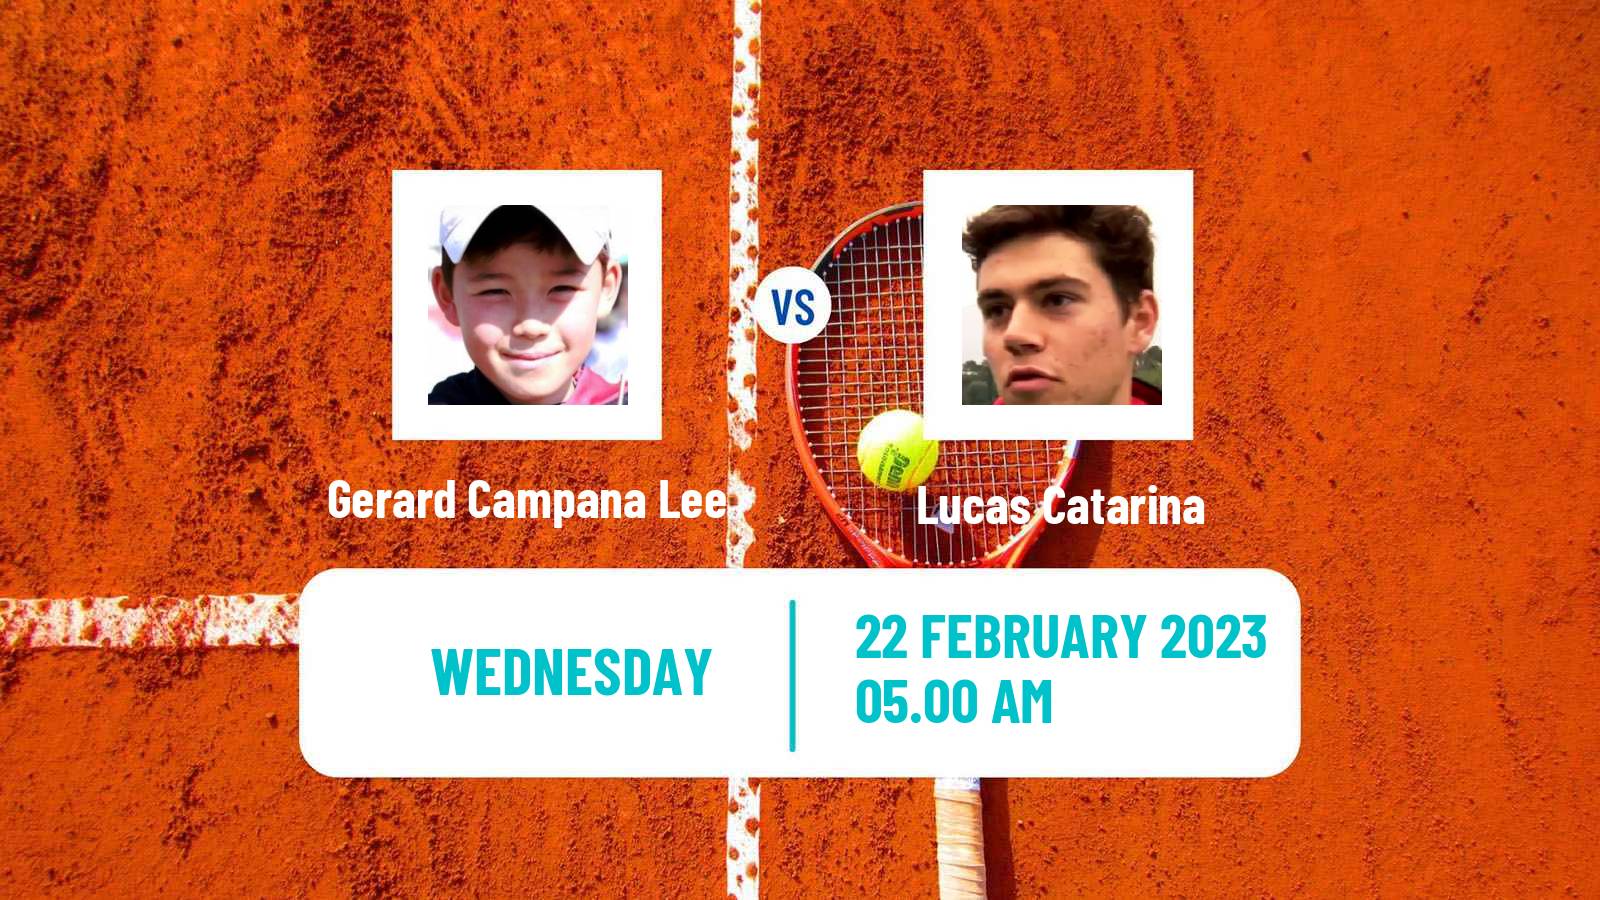 Tennis ITF Tournaments Gerard Campana Lee - Lucas Catarina